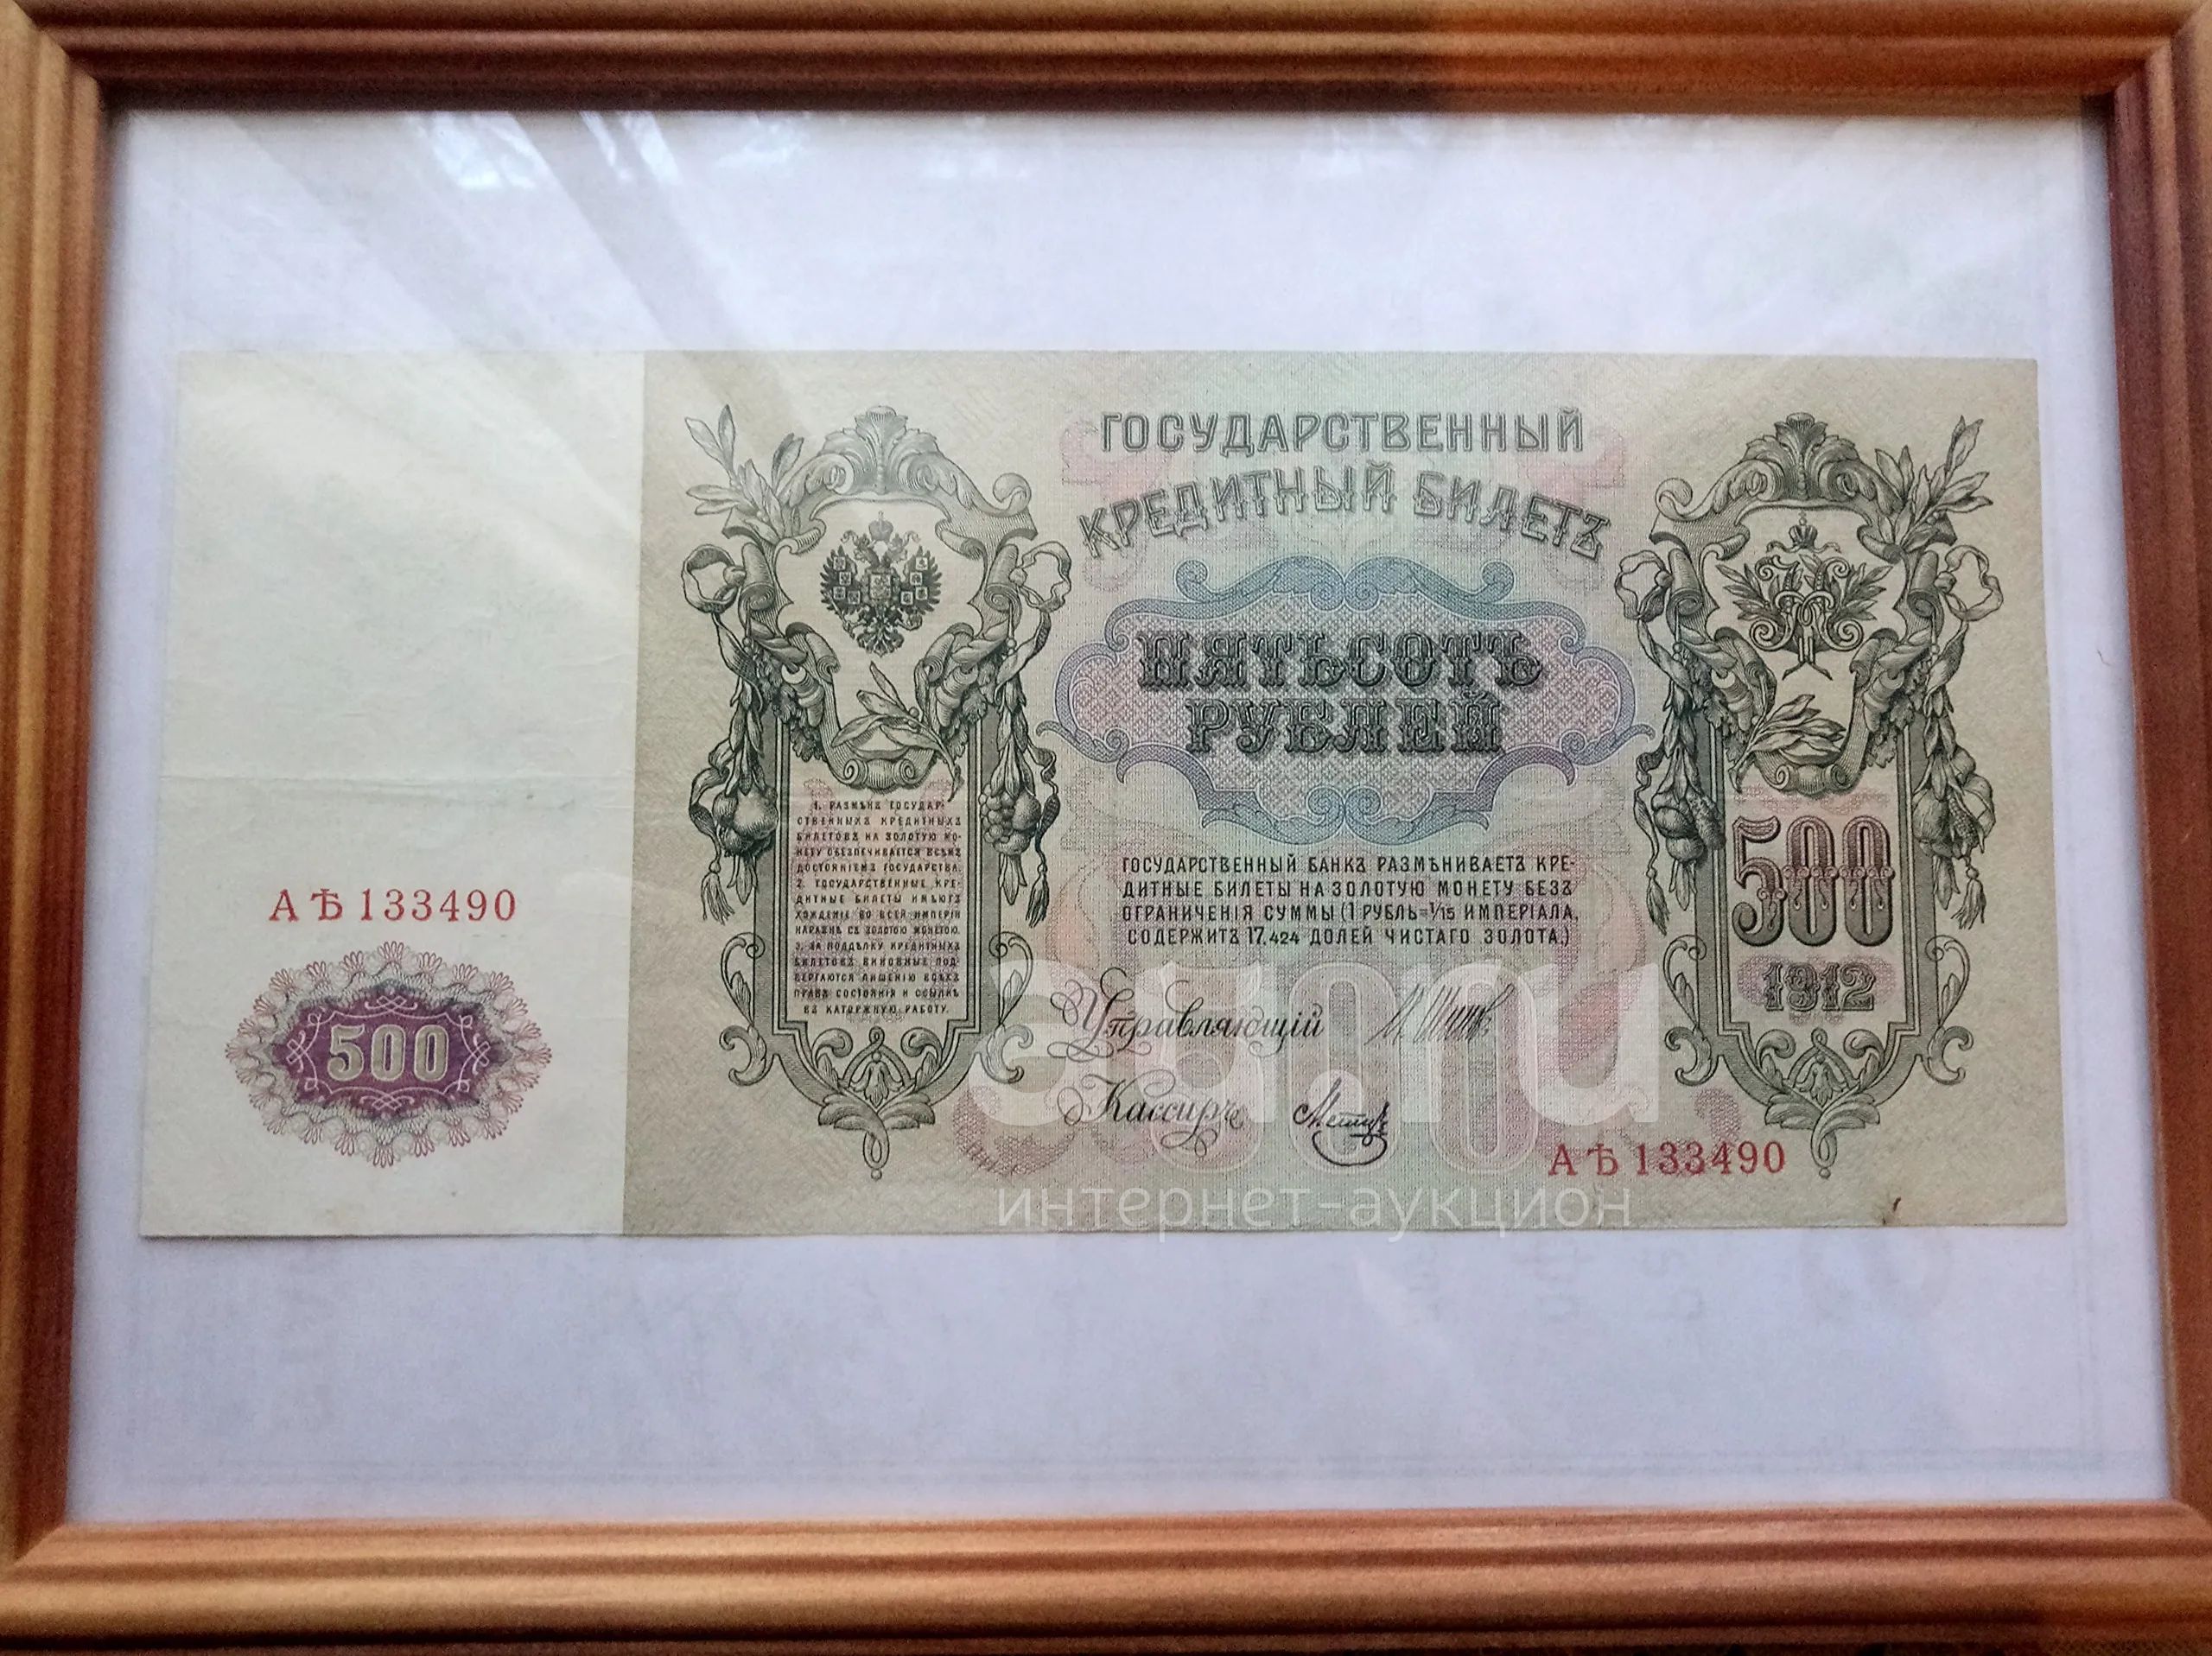 500 Рублей 1912. Банкнота 500 рублей 1912 года фото.